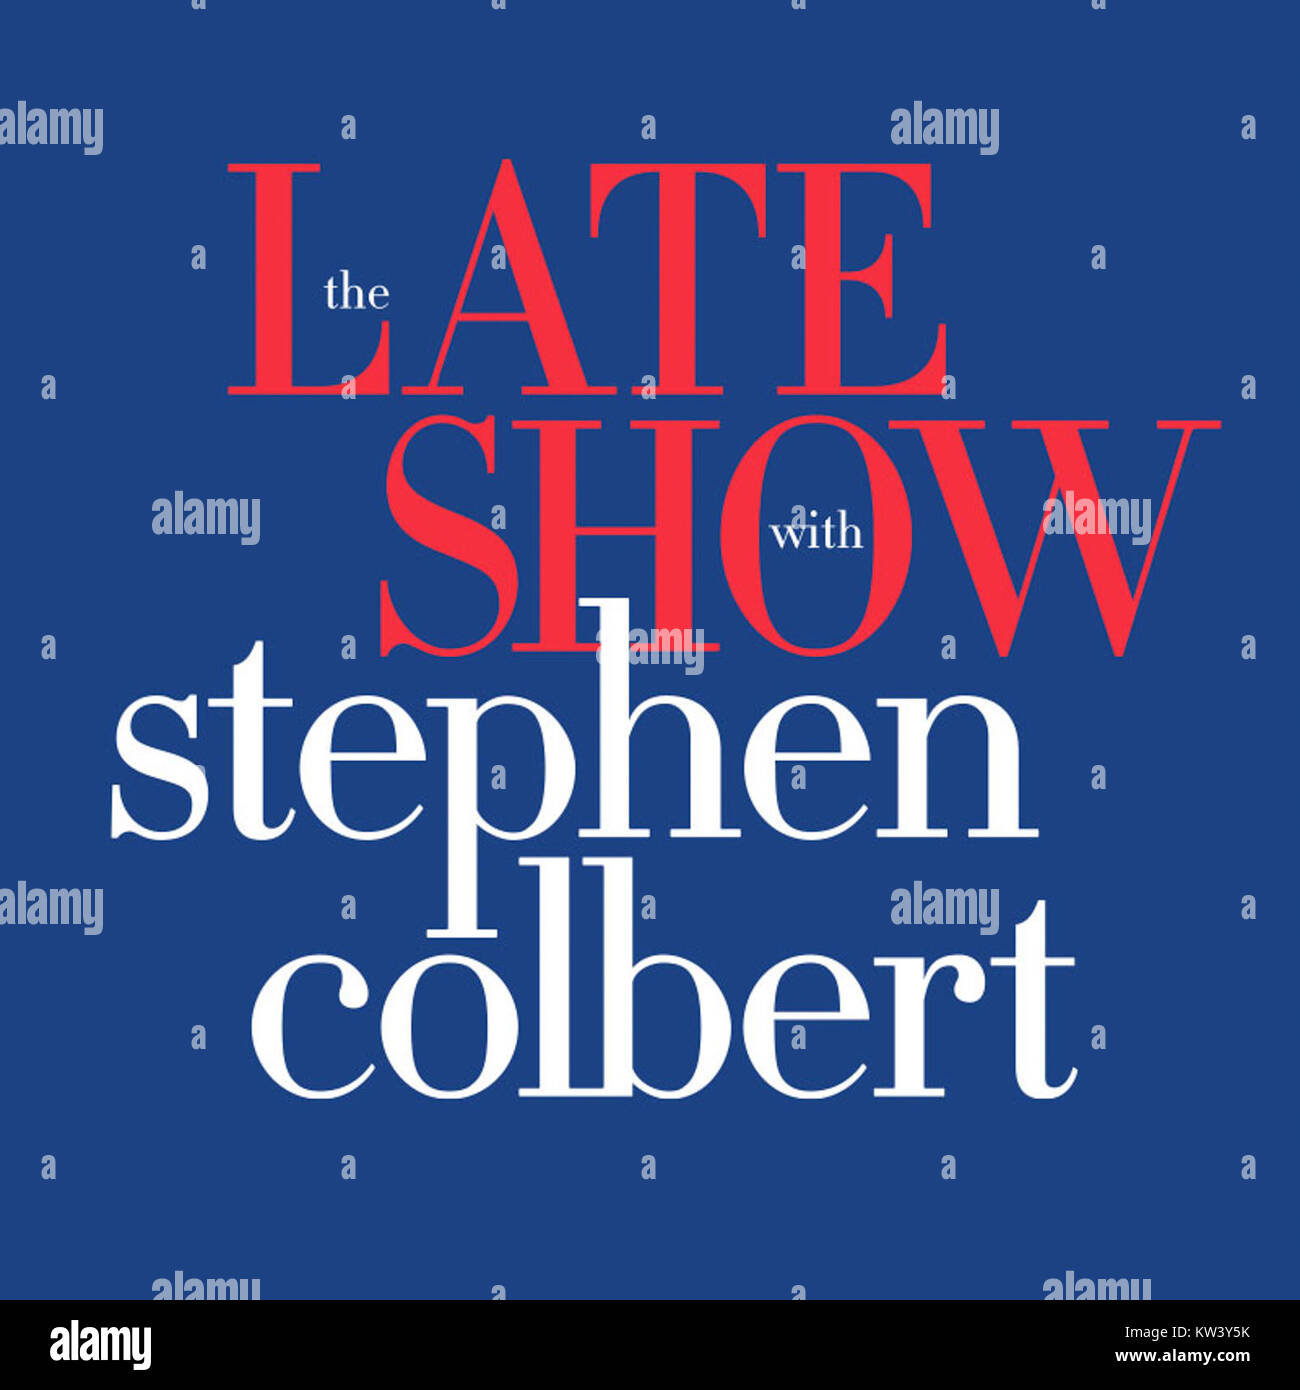 Lateshow colbert logo Stock Photo